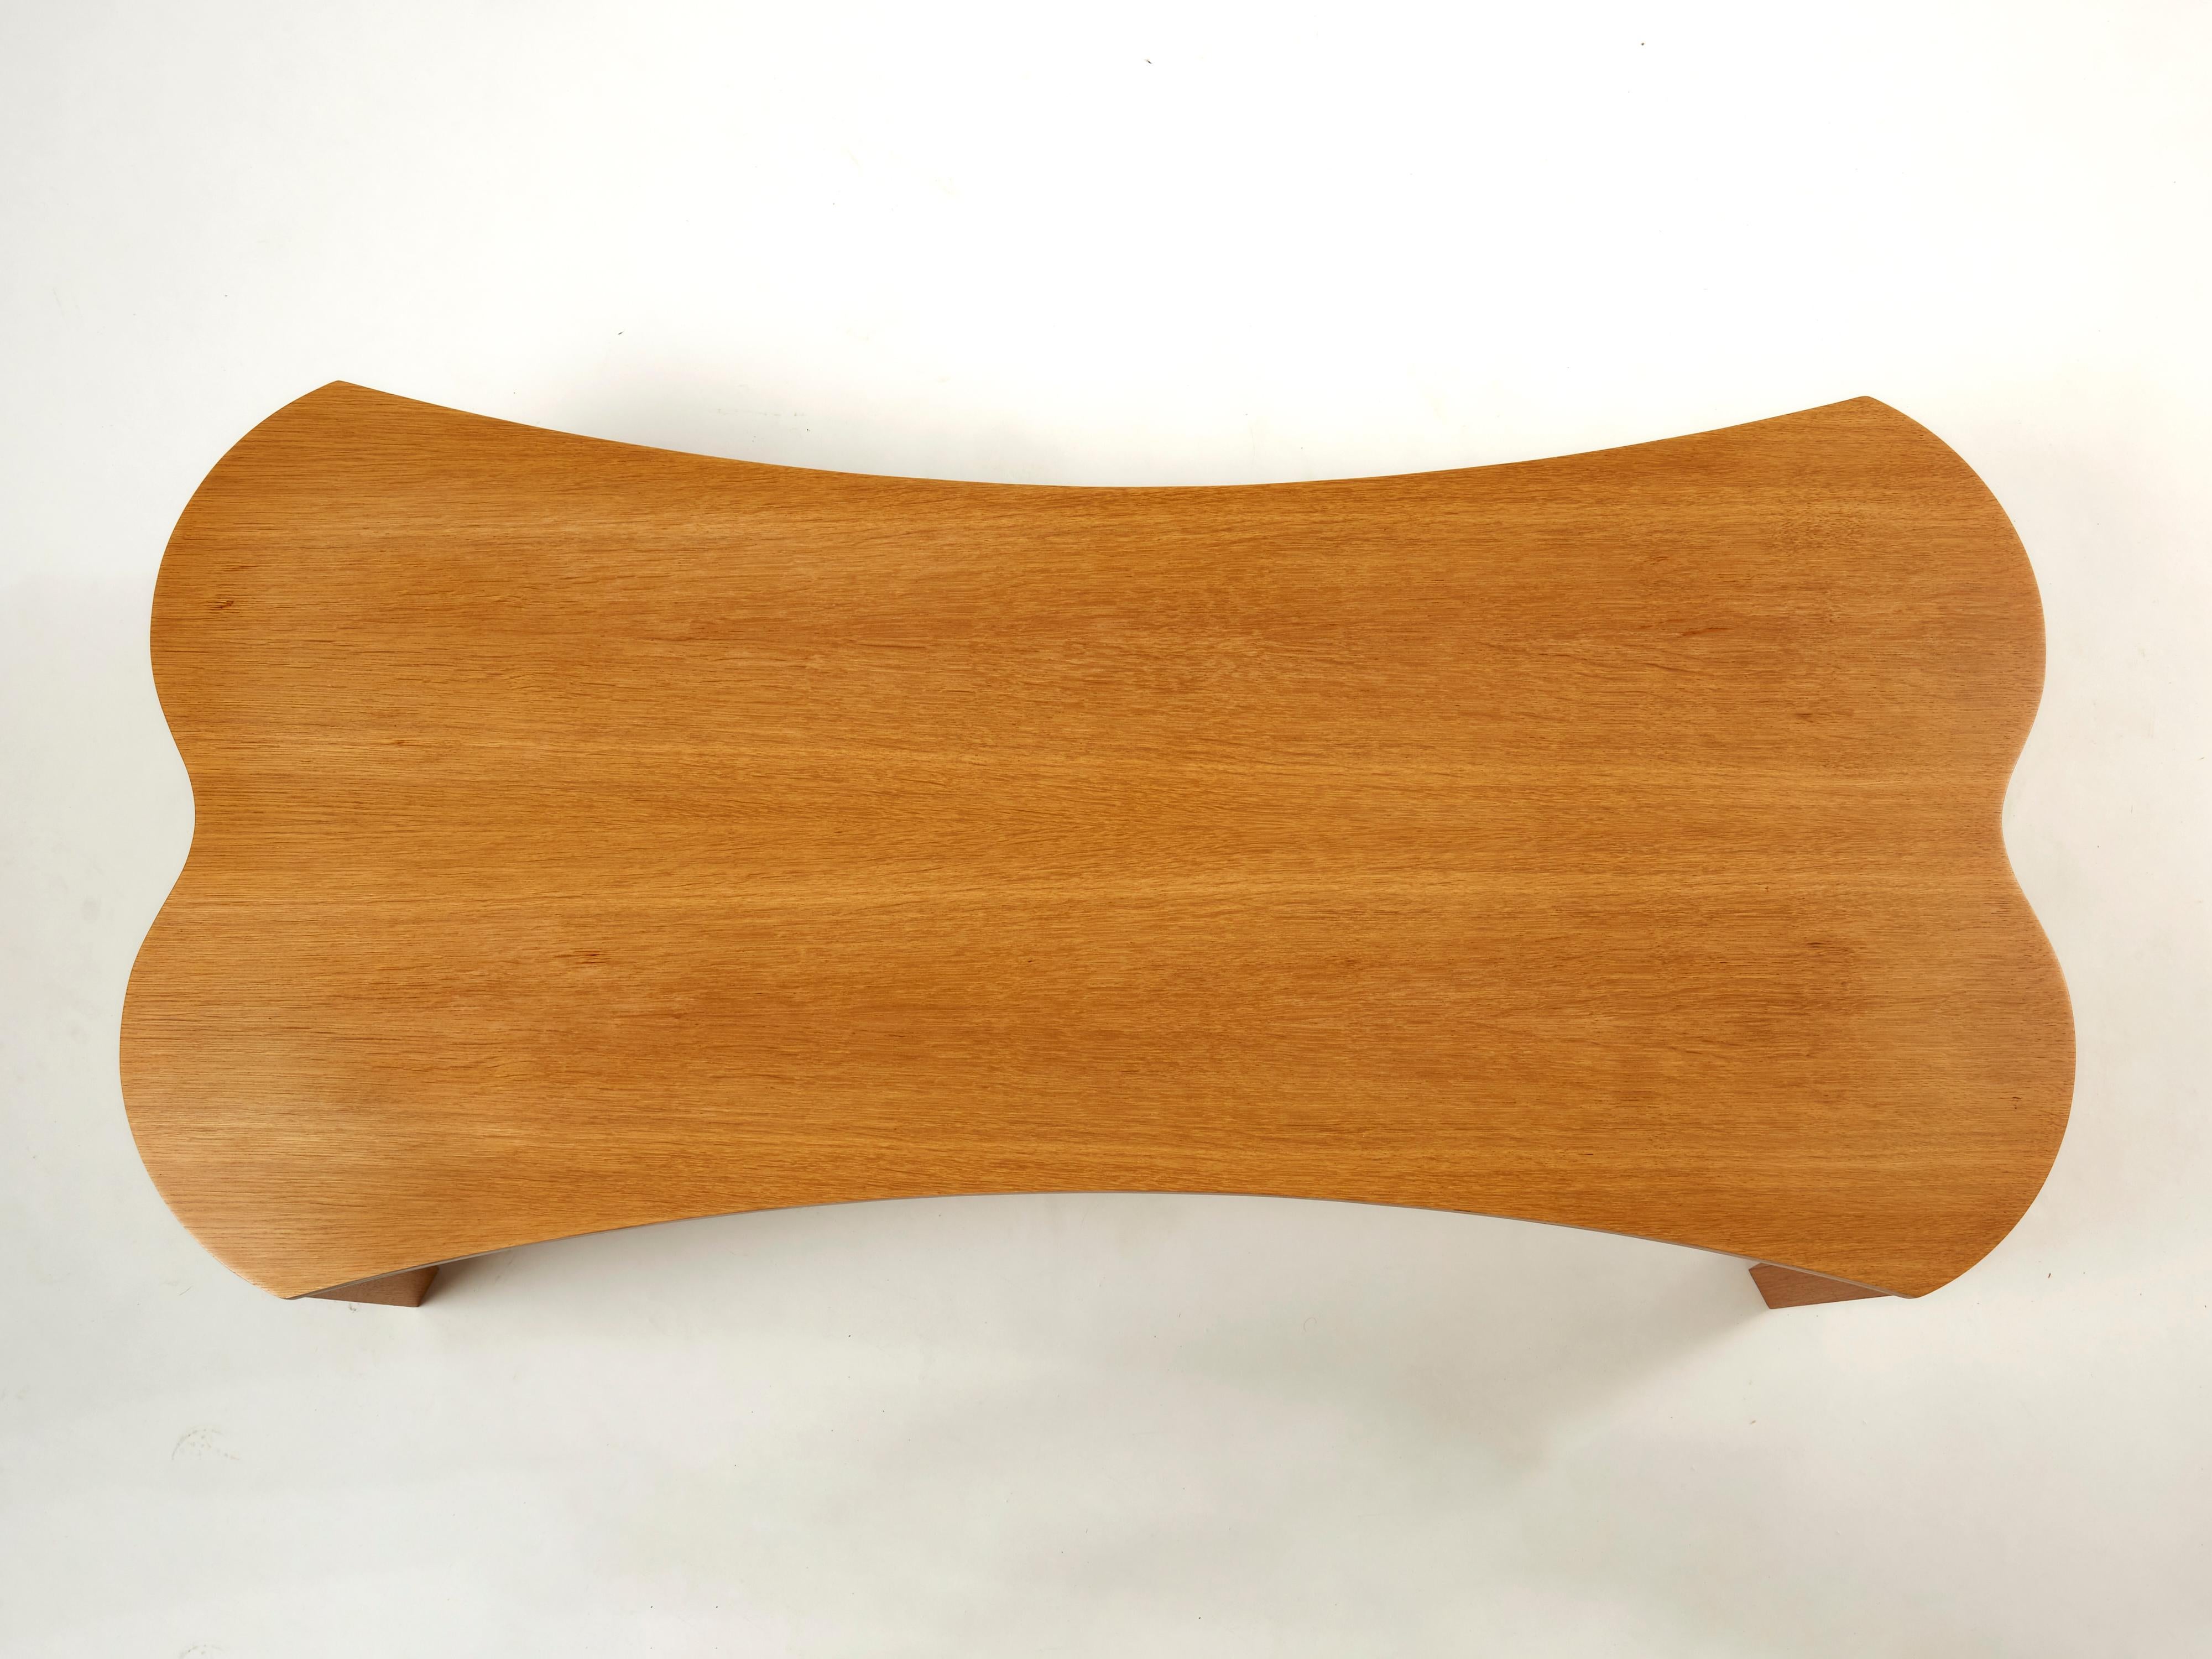 Unique Vincent Poujardieu Free Form Oak Wood Coffee Table 1992 For Sale 1